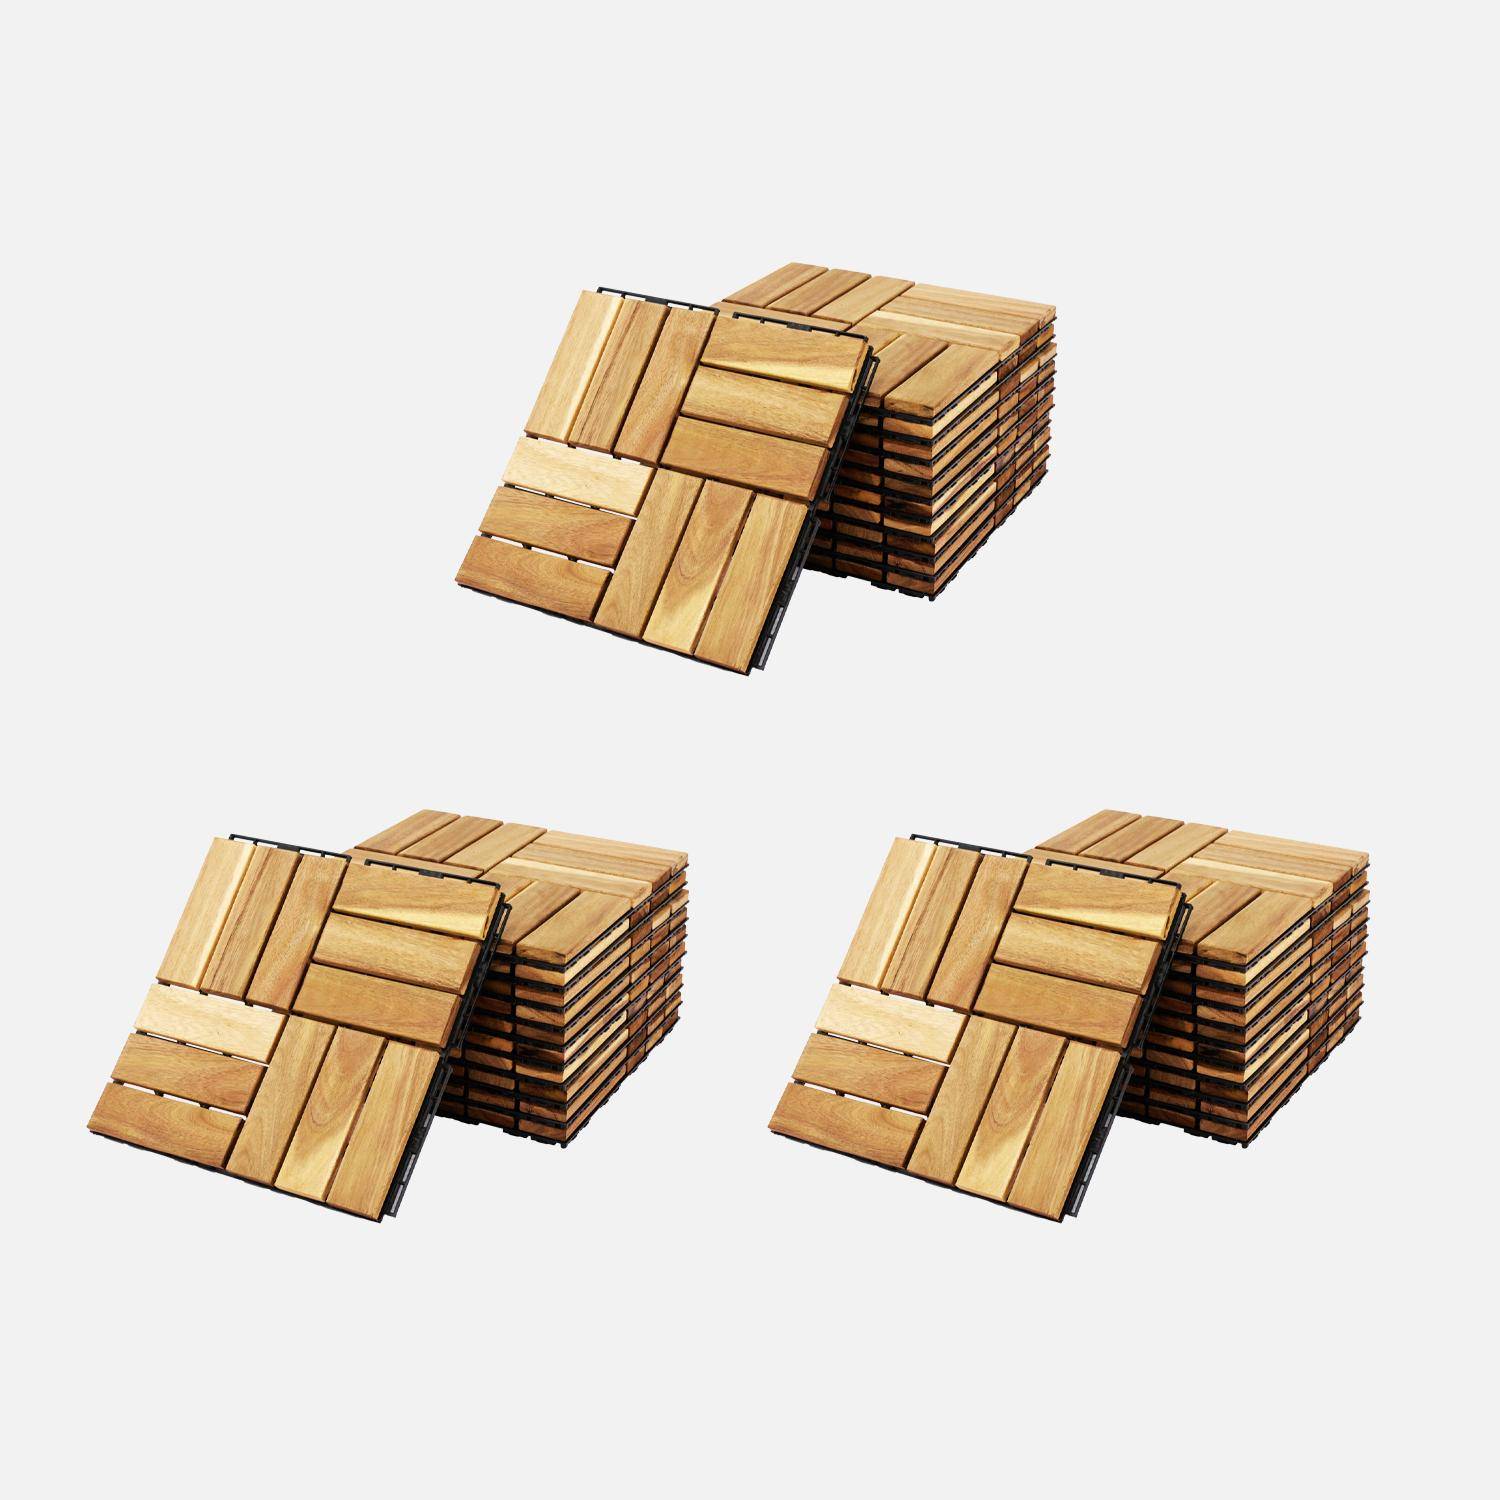 Lote de 36 ladrilhos de madeira de acácia para decks 30x30cm, padrão quadrado, encaixáveis Photo1